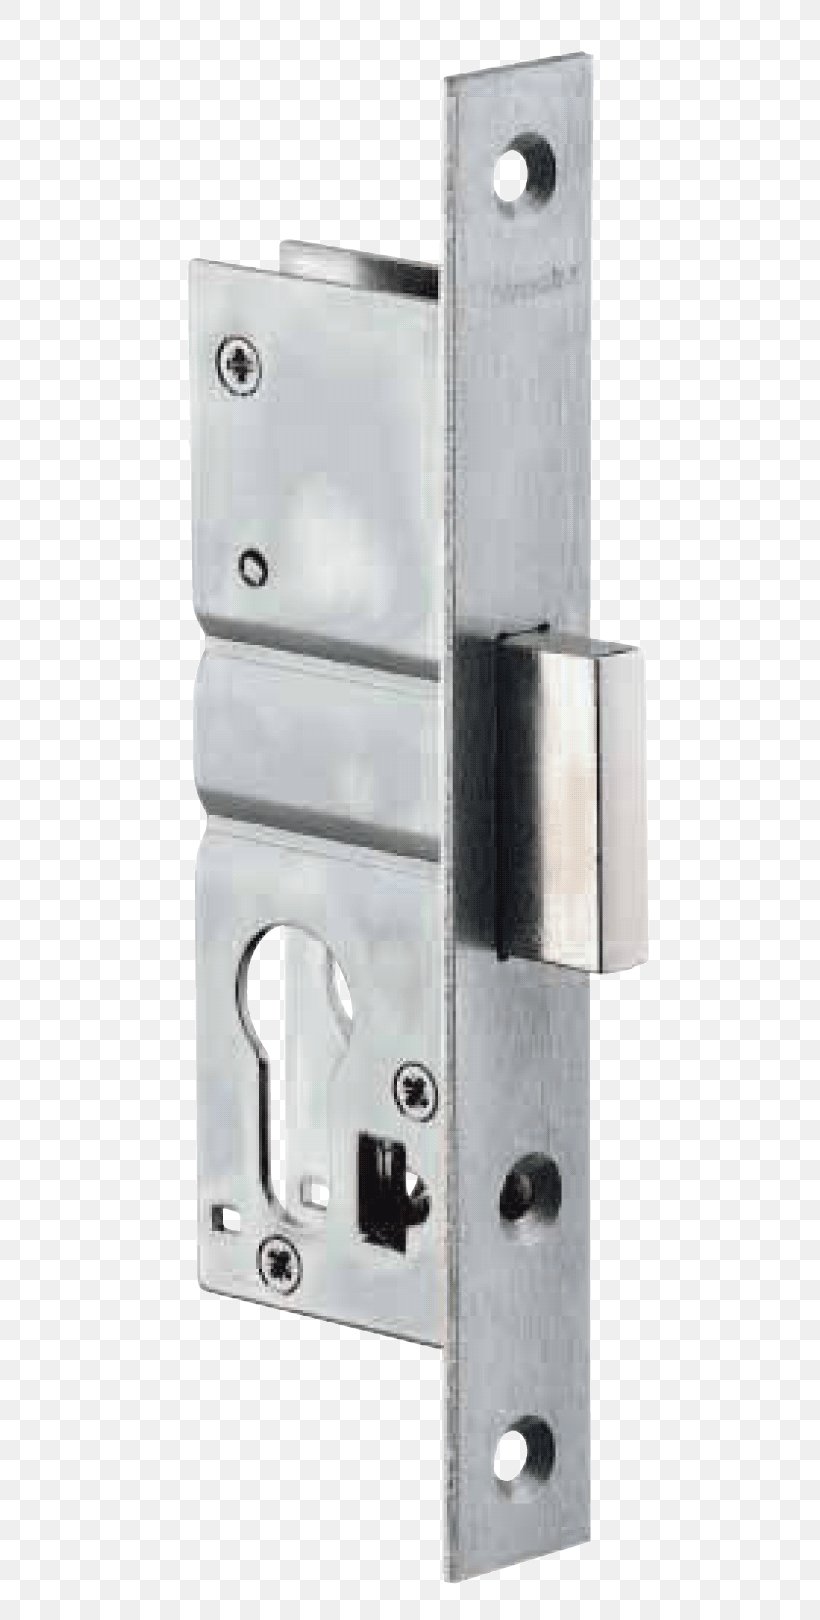 Lockset Latch Single-point Locking Dead Bolt, PNG, 649x1620px, Lock, Dead Bolt, Door, Fire, Fire Door Download Free